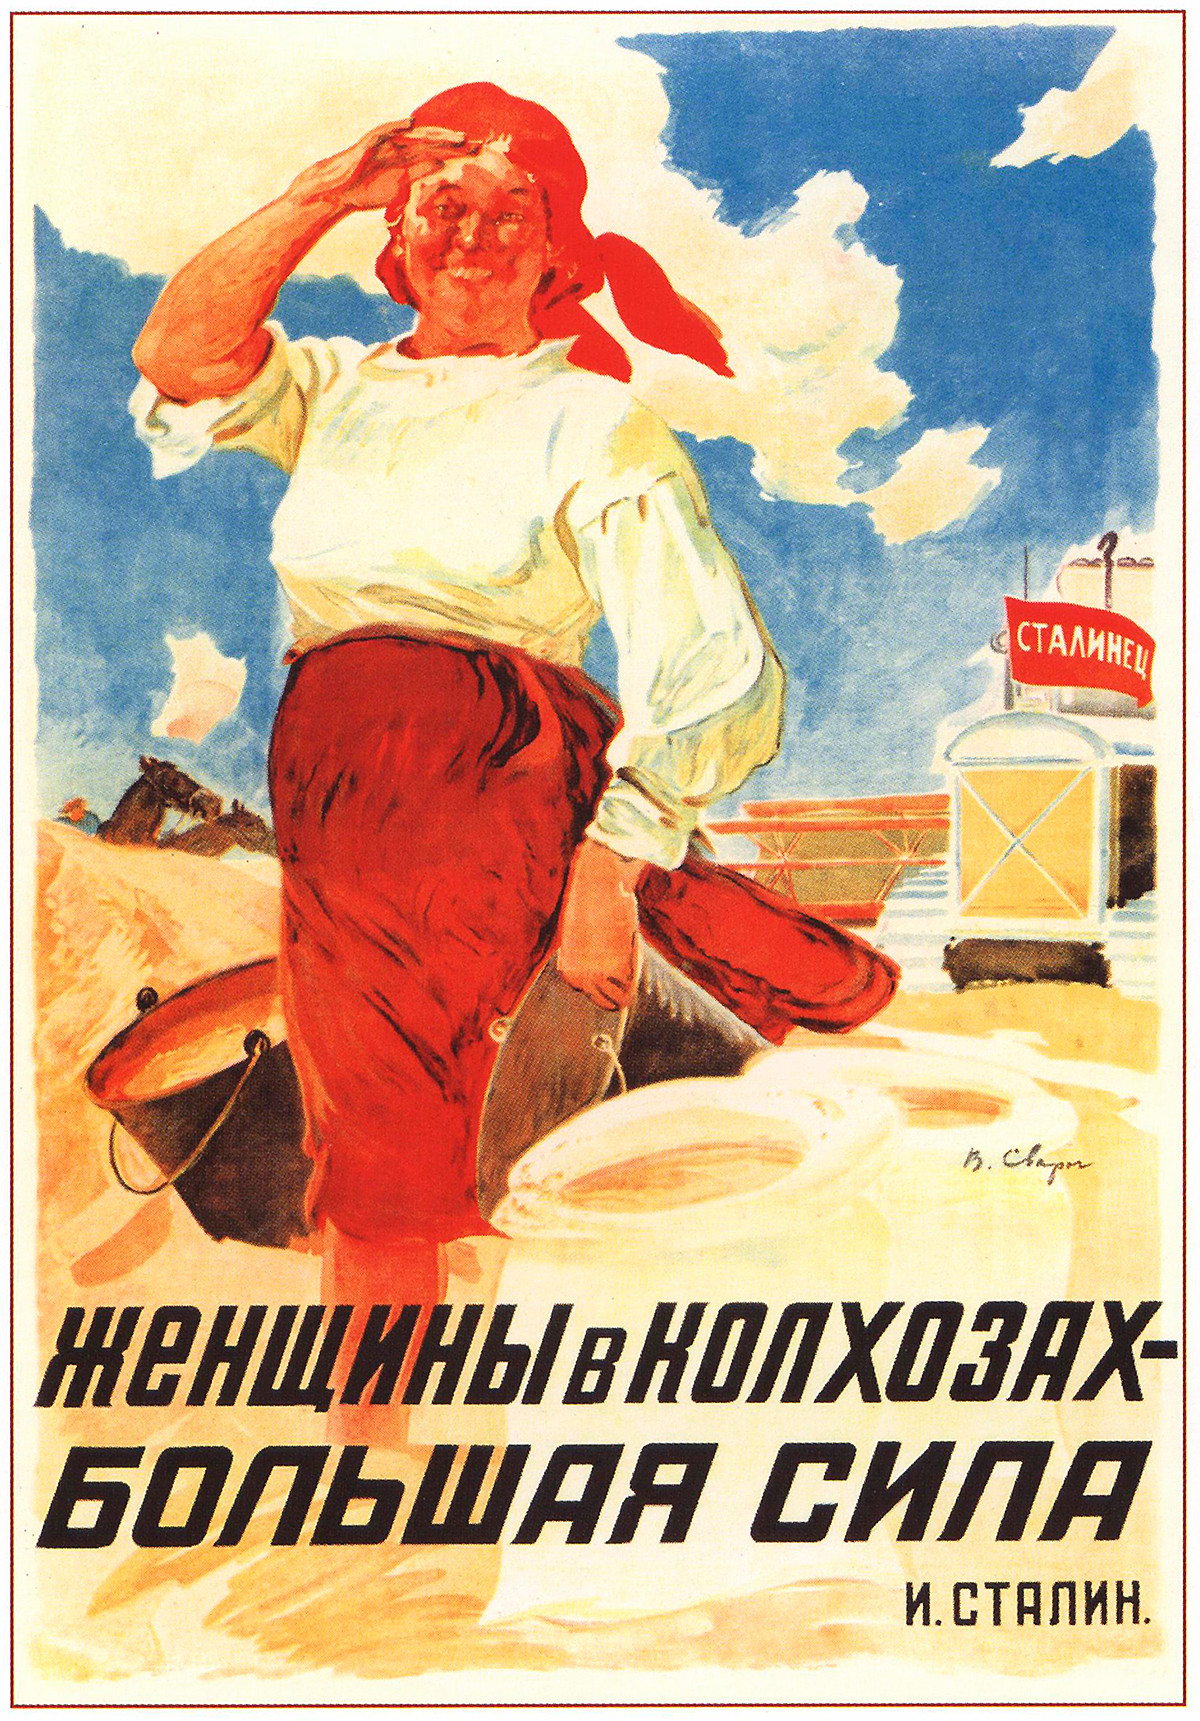 “Las mujeres en el koljós, una gran fuerza. Stalin”